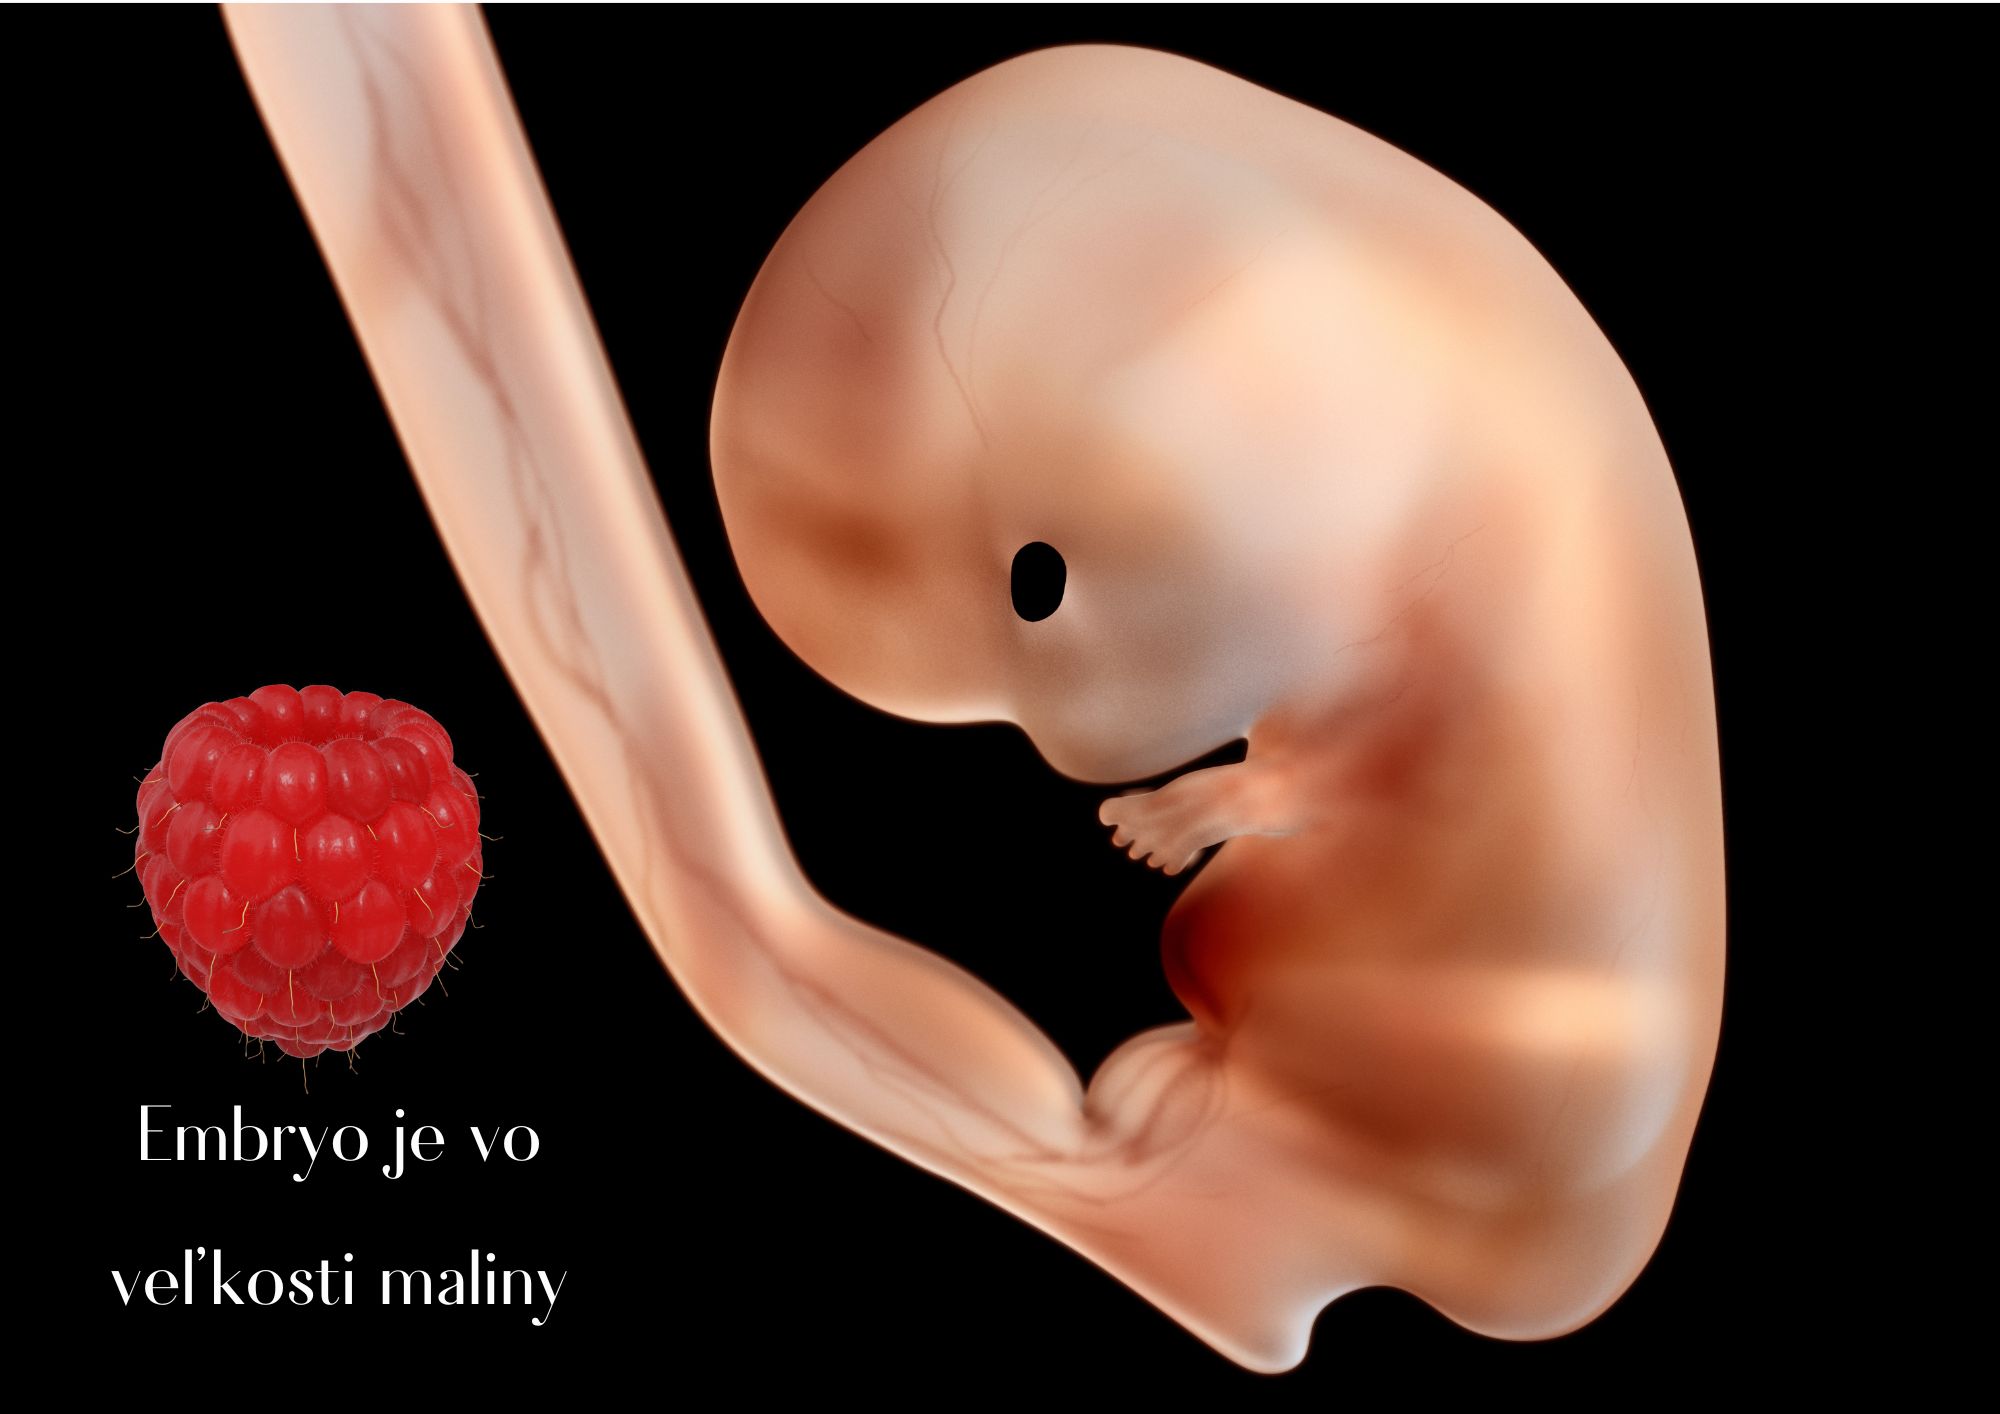 v 8. tyzdni je embryo vo velkosti maliny